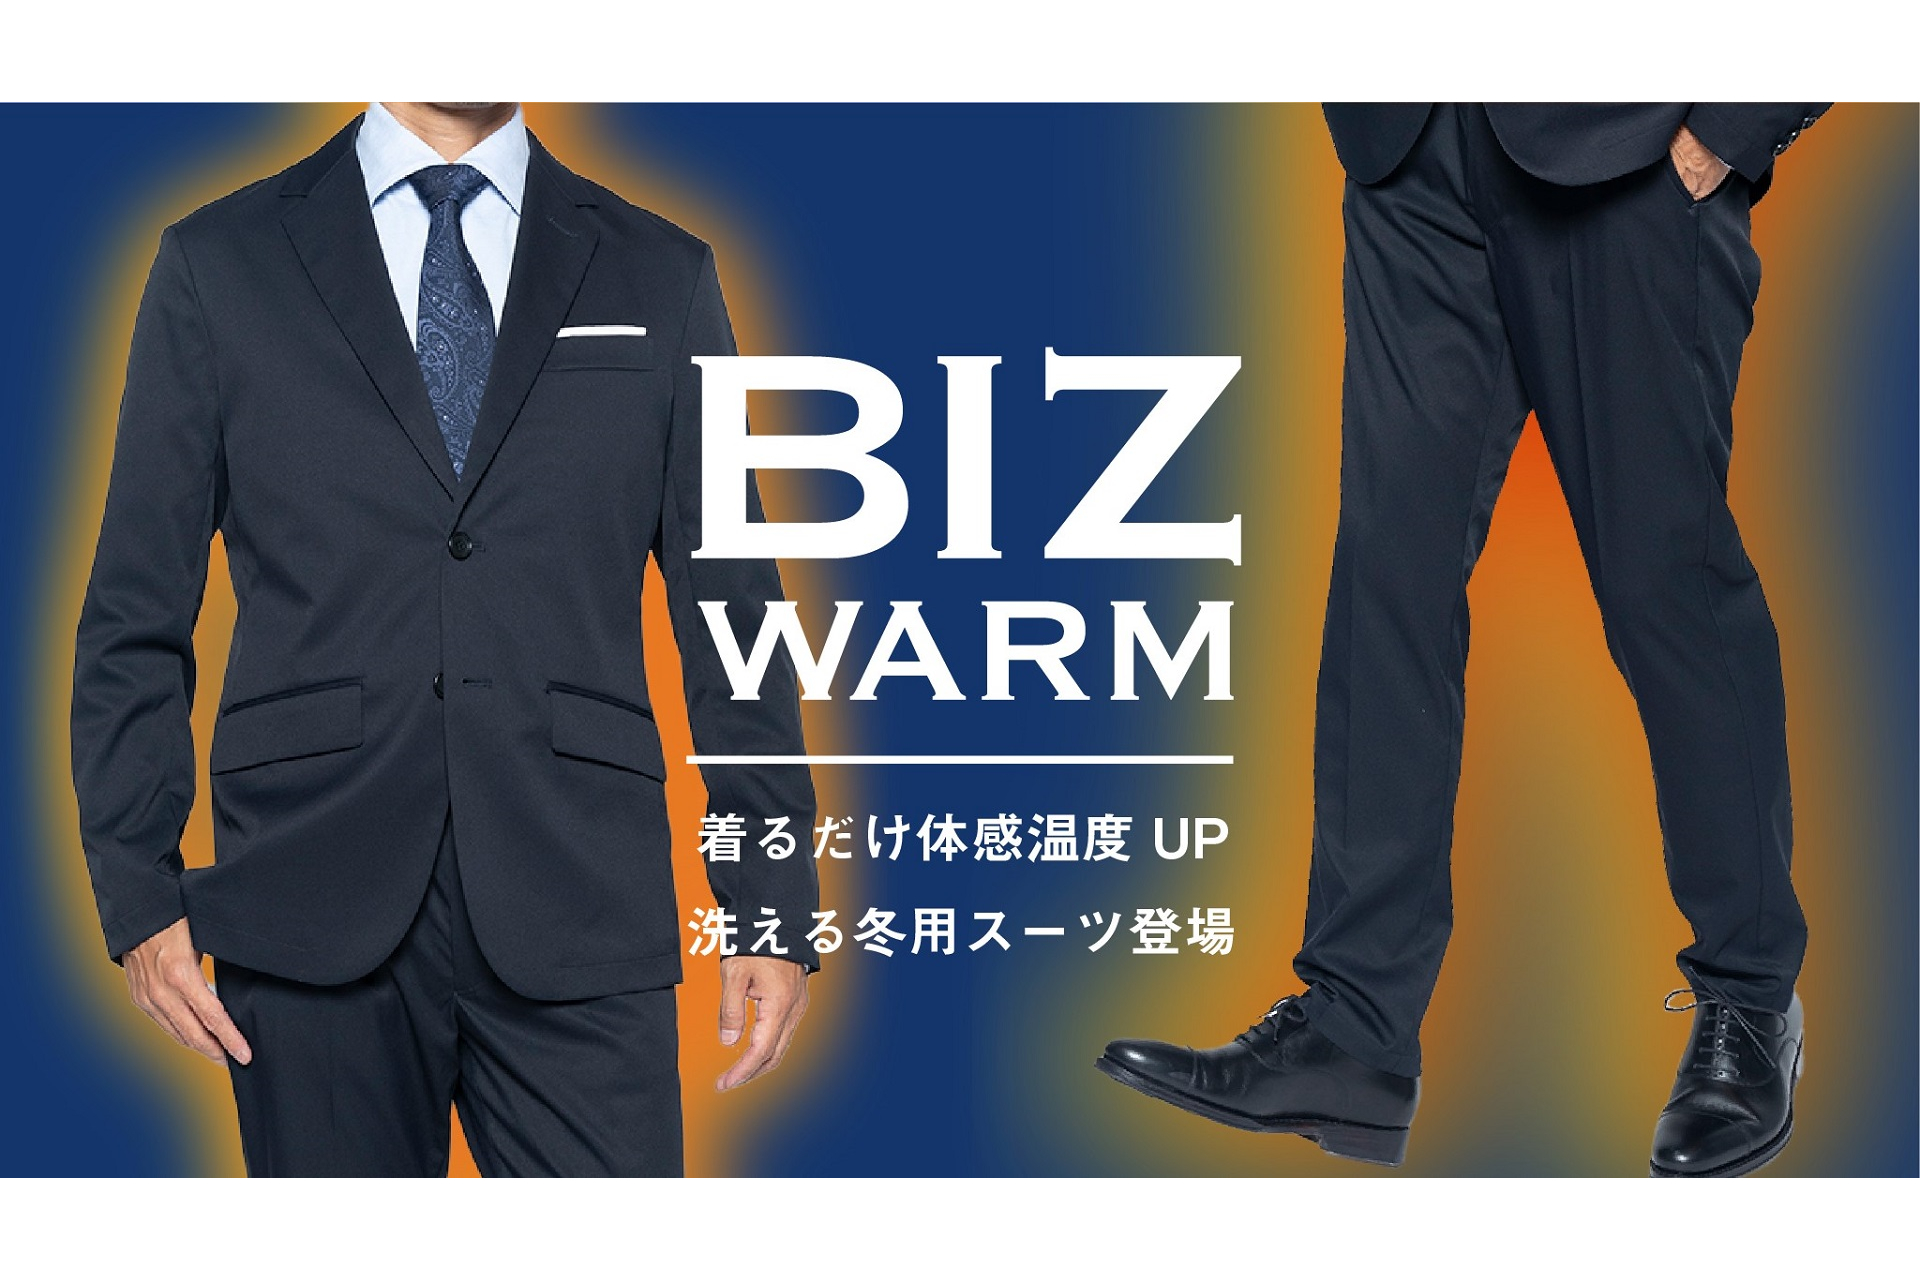 スーツに見える作業着WWS、表面温度が3℃上がる軽量セットアップ「Biz